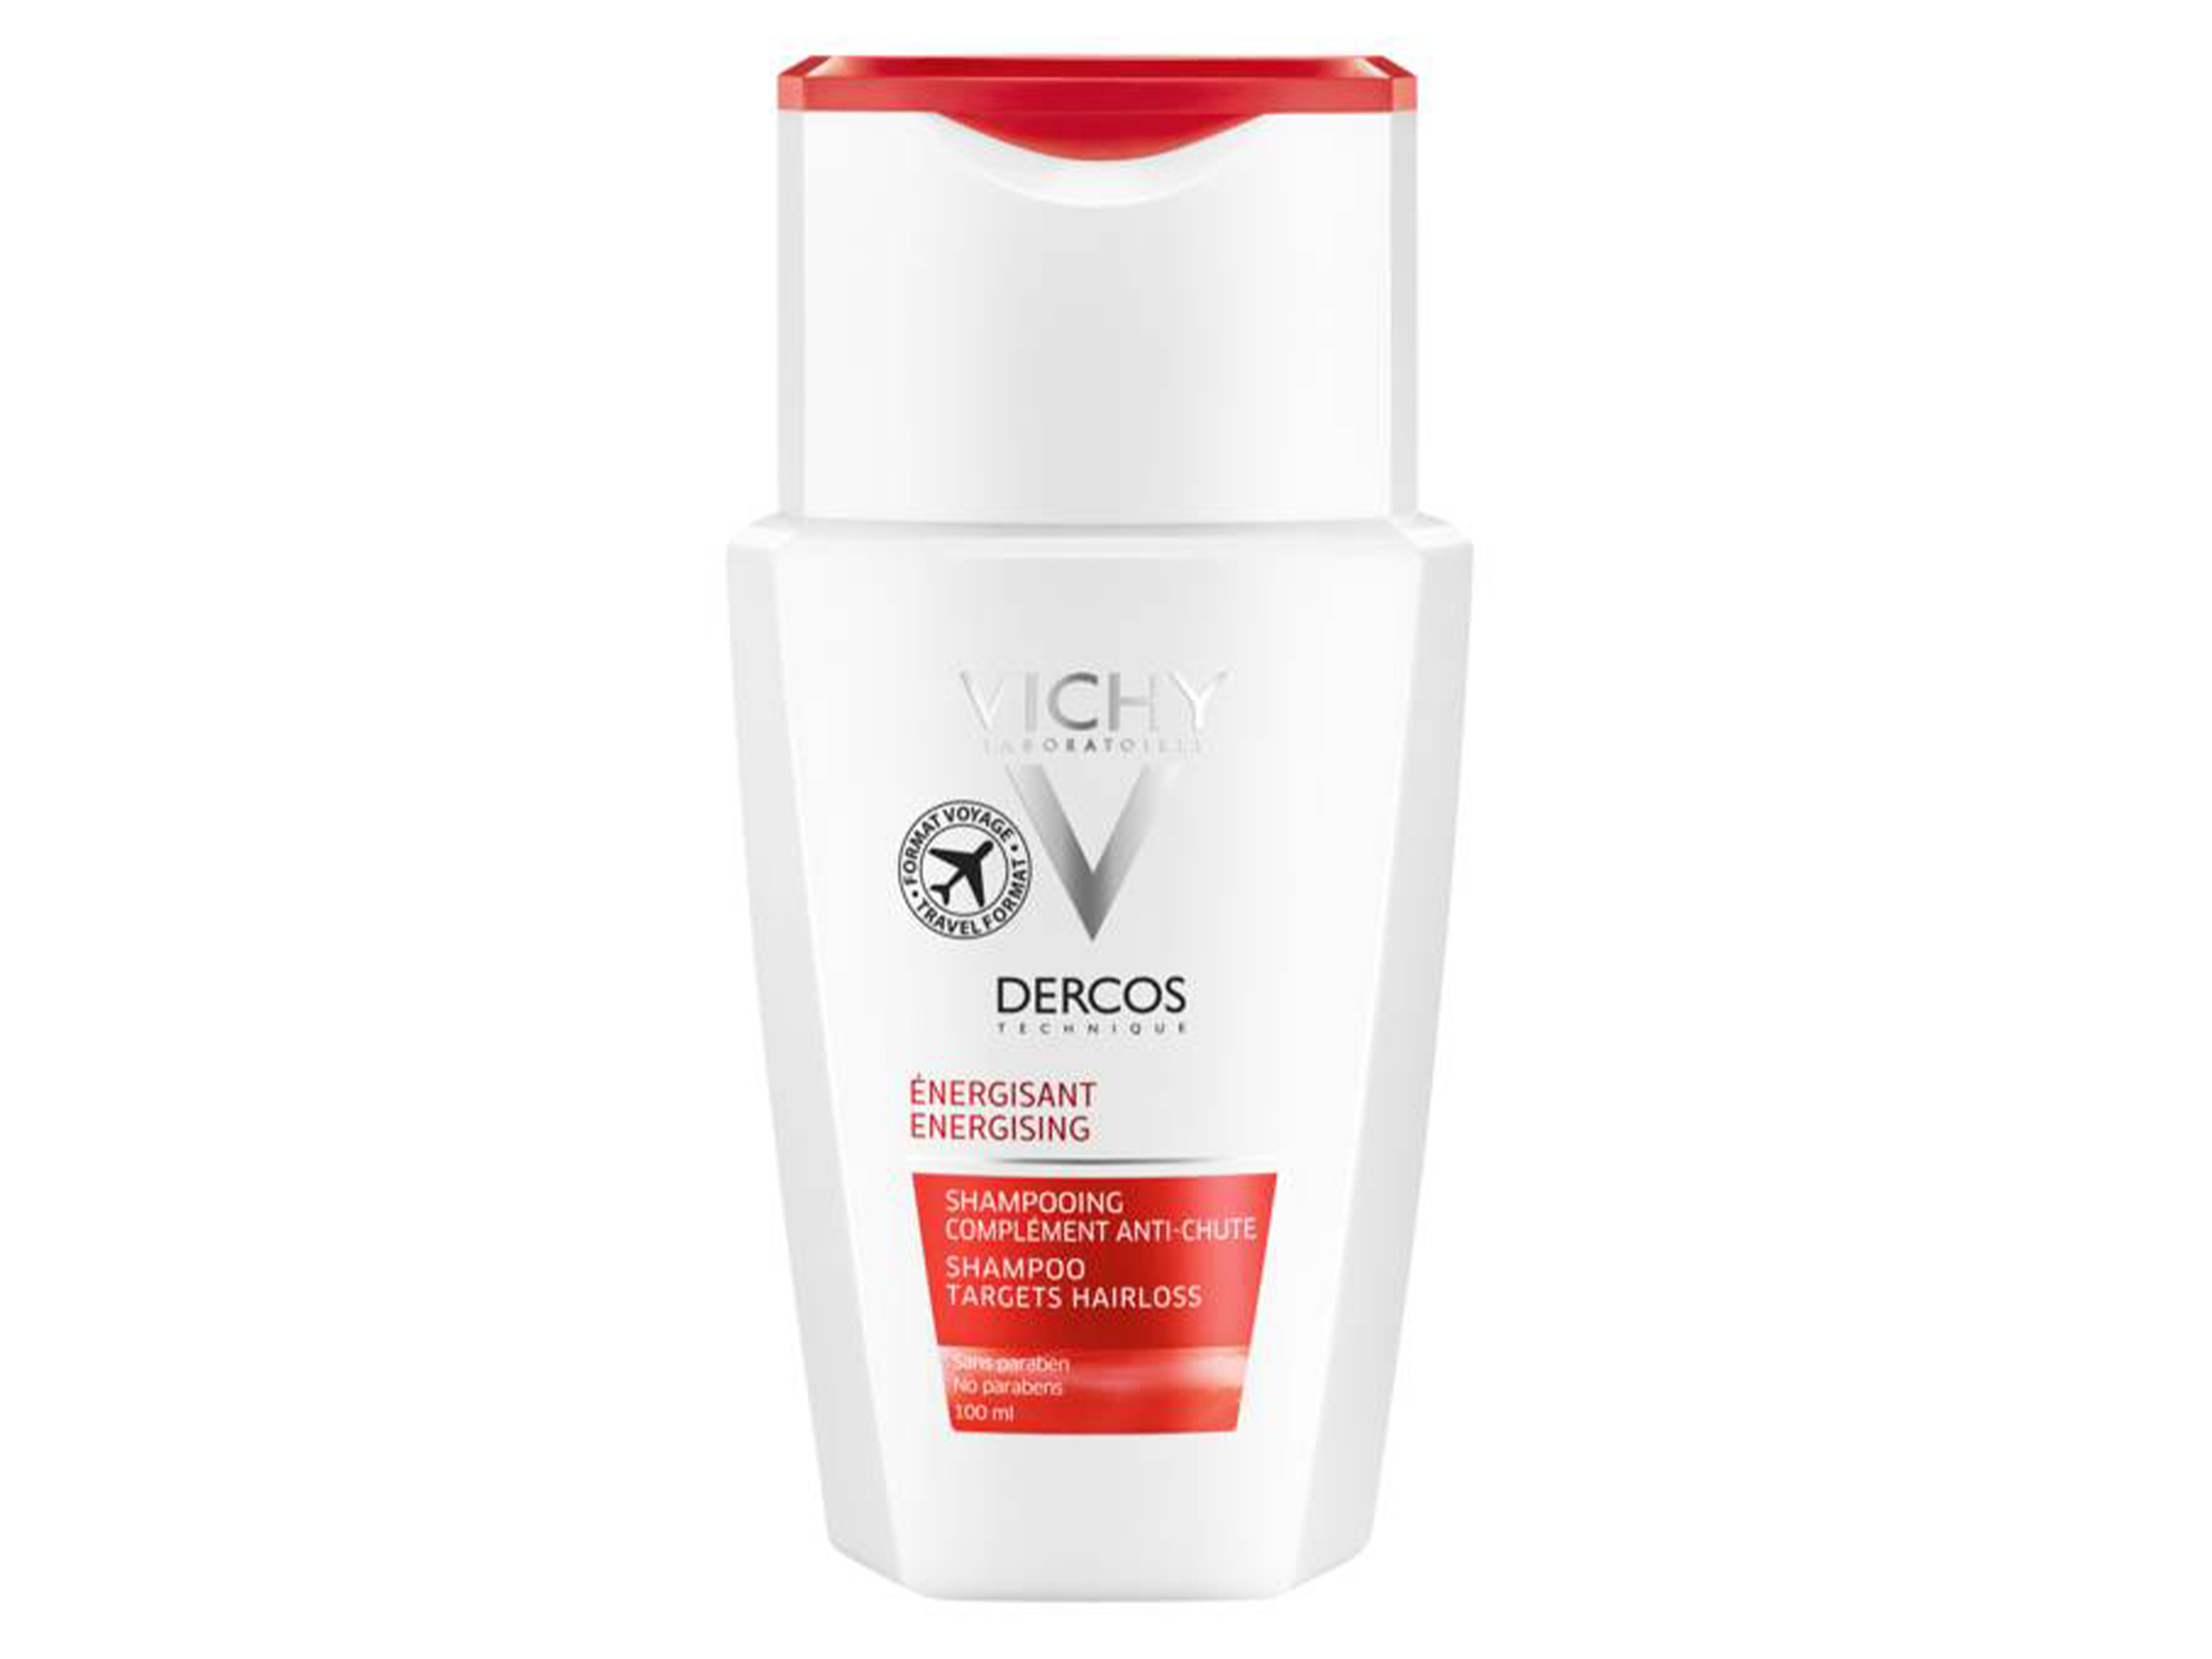 Vichy Dercos shampoo energi, 100 ml